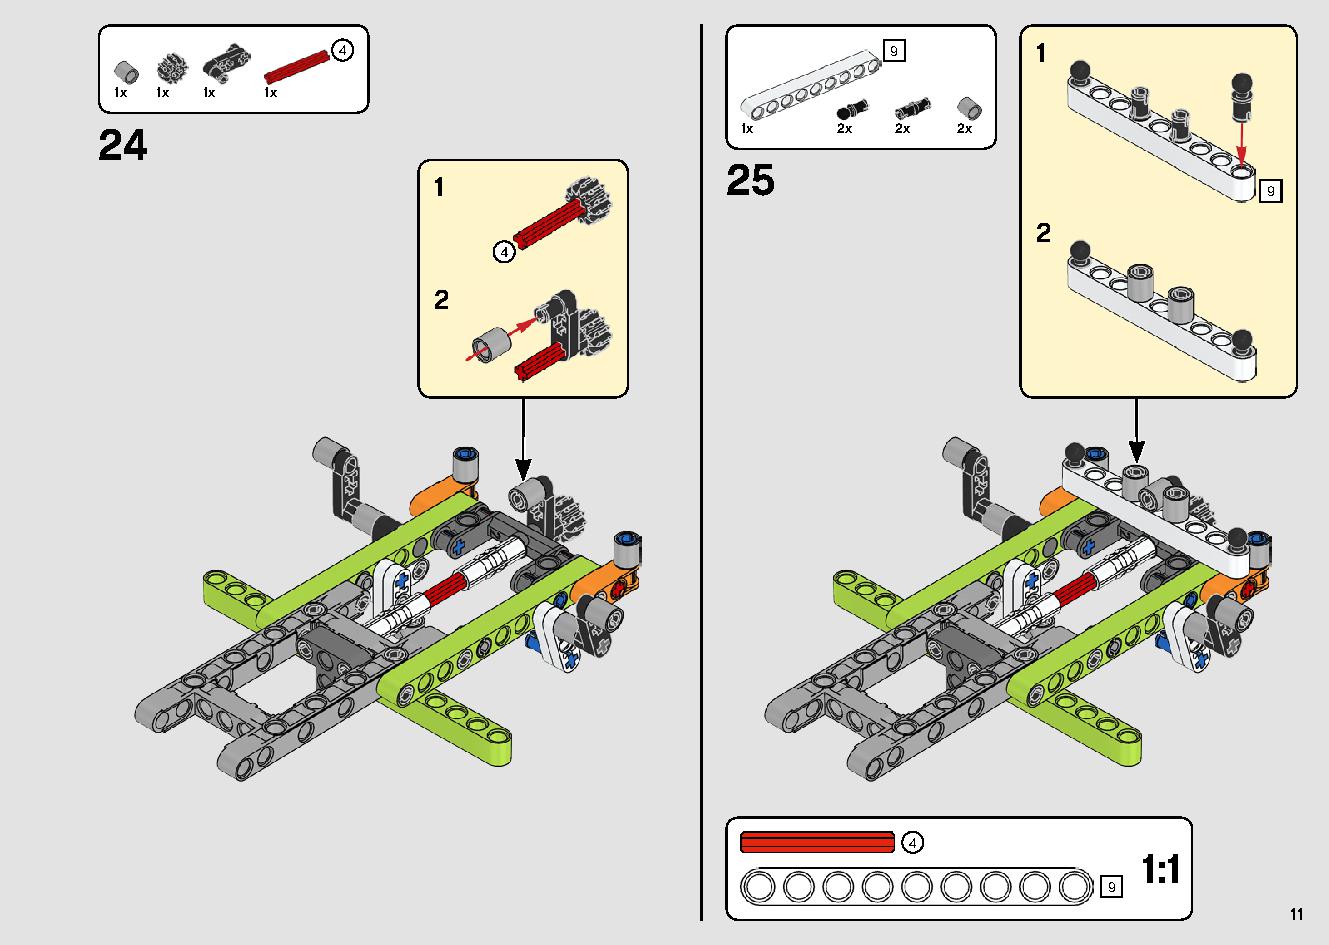 カタマランヨット 42105 レゴの商品情報 レゴの説明書・組立方法 11 page